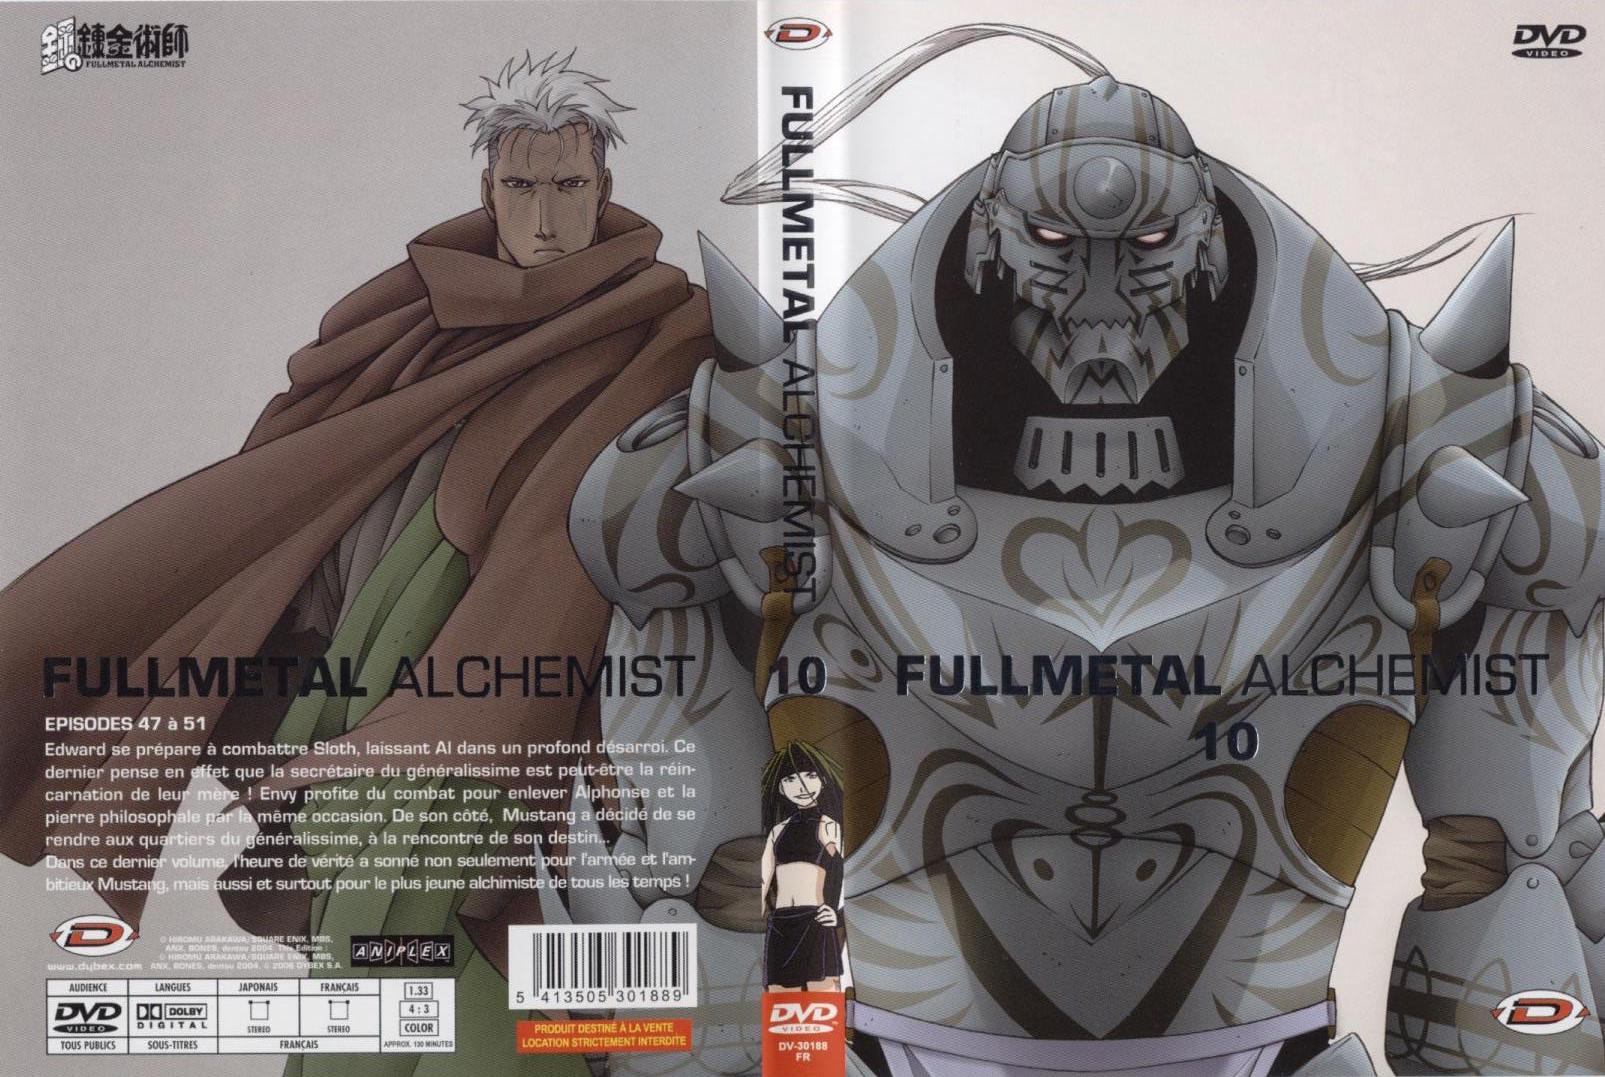 Jaquette DVD Fullmetal alchemist vol 10